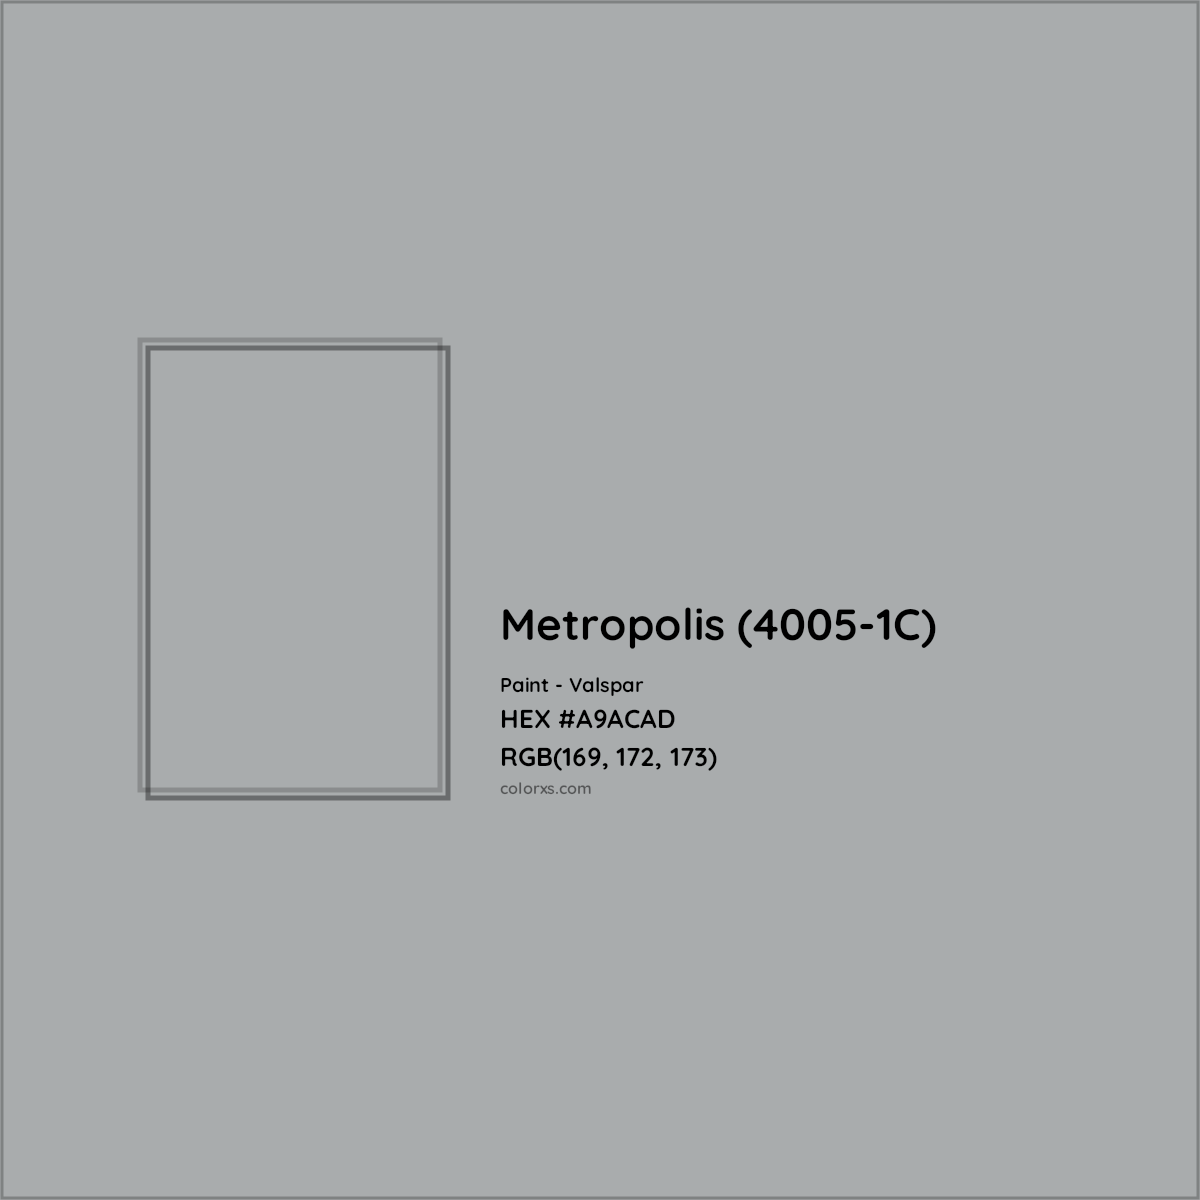 HEX #A9ACAD Metropolis (4005-1C) Paint Valspar - Color Code